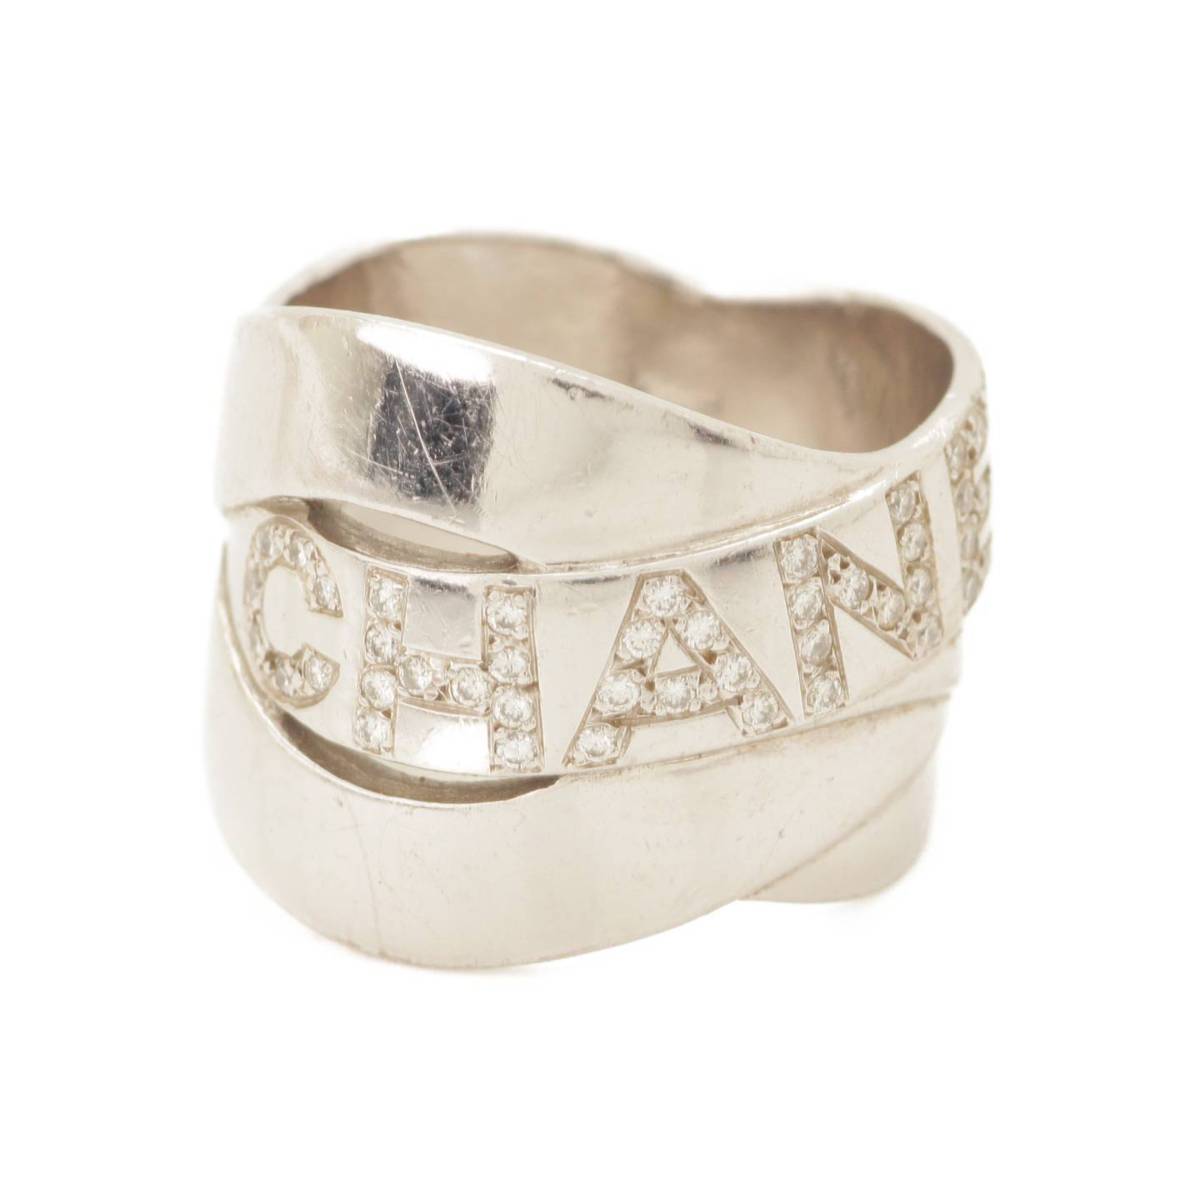 【シャネル】Chanel　ボルディック ダイヤ リング 指輪 750 K18WG 10.9g ホワイトゴールド 7号  【中古】【鑑定済・正規品保証】128621 | retro